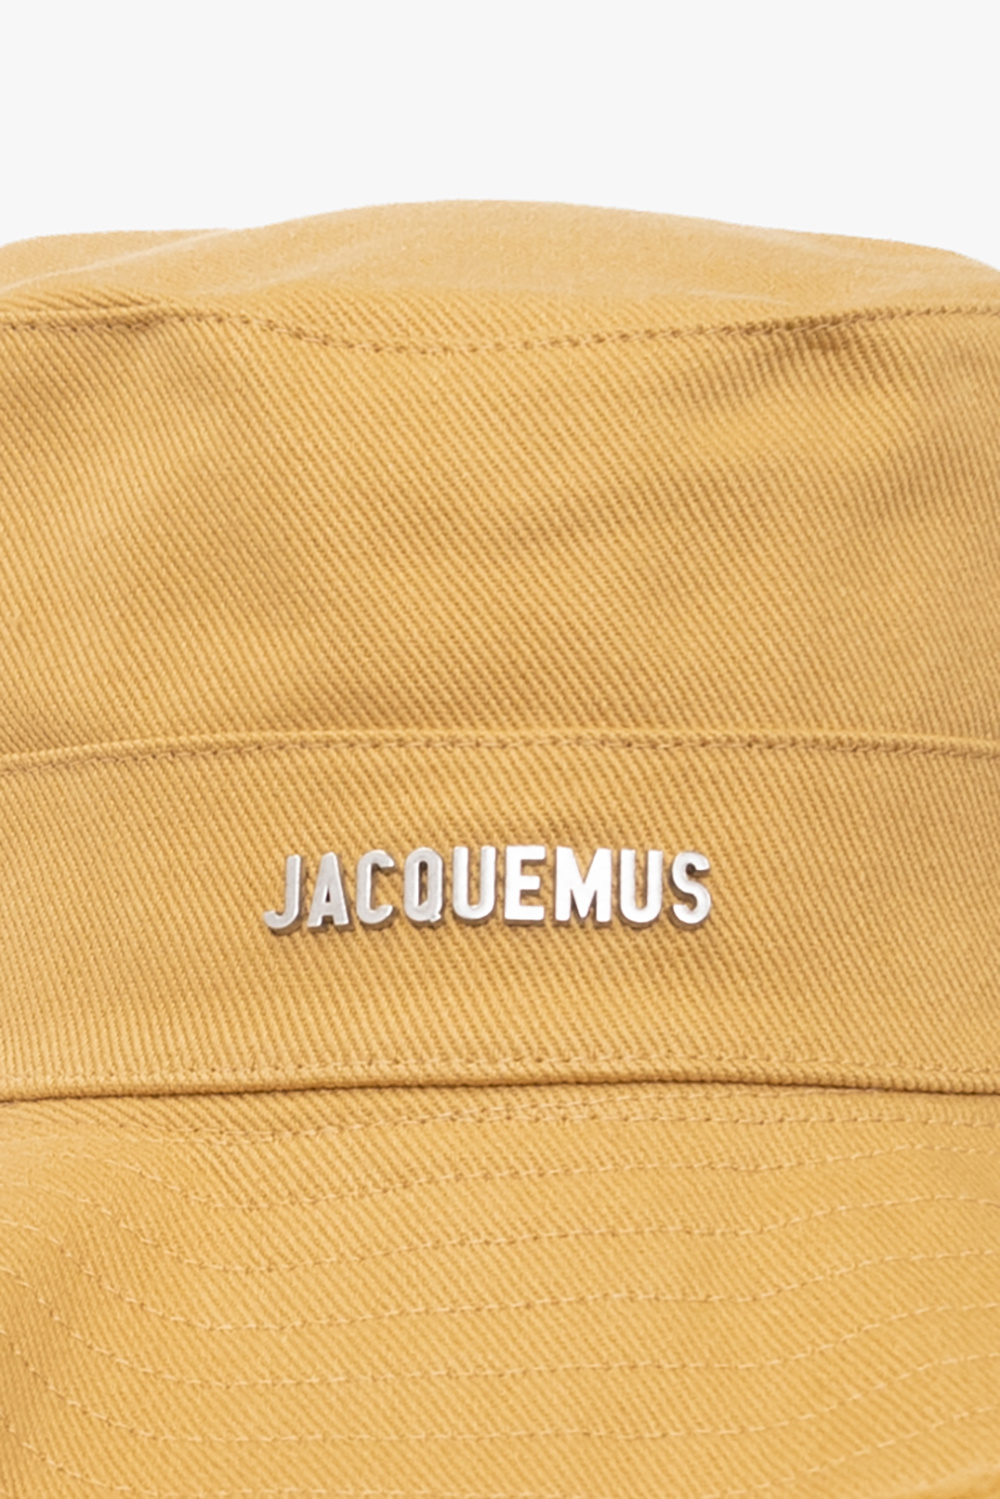 Jacquemus Cotton Fragrance hat